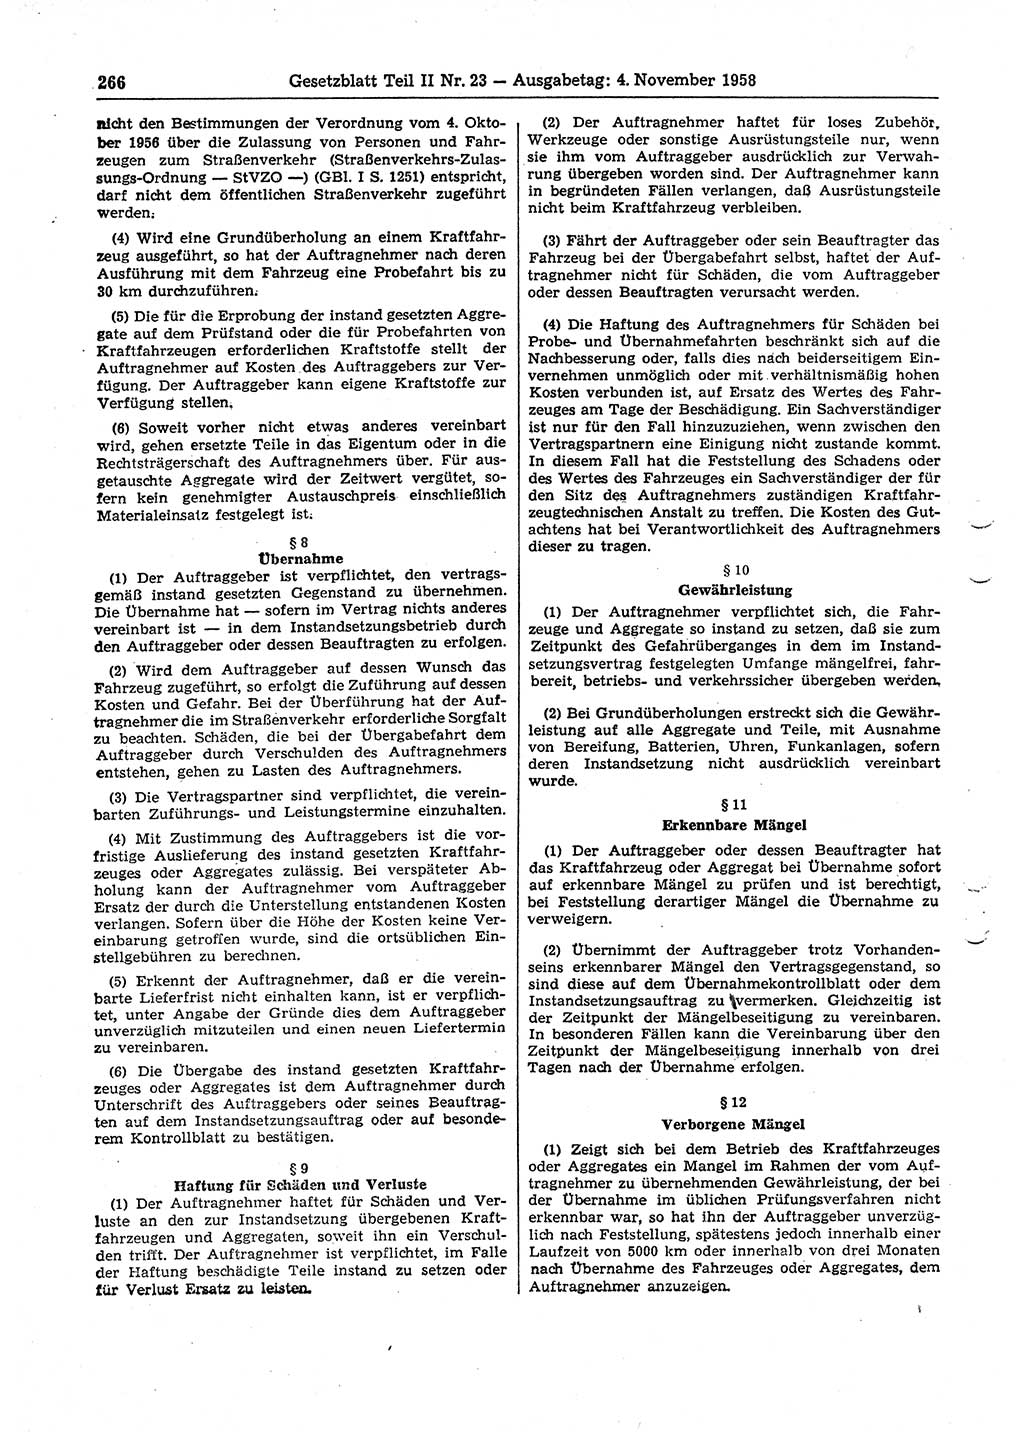 Gesetzblatt (GBl.) der Deutschen Demokratischen Republik (DDR) Teil ⅠⅠ 1958, Seite 266 (GBl. DDR ⅠⅠ 1958, S. 266)